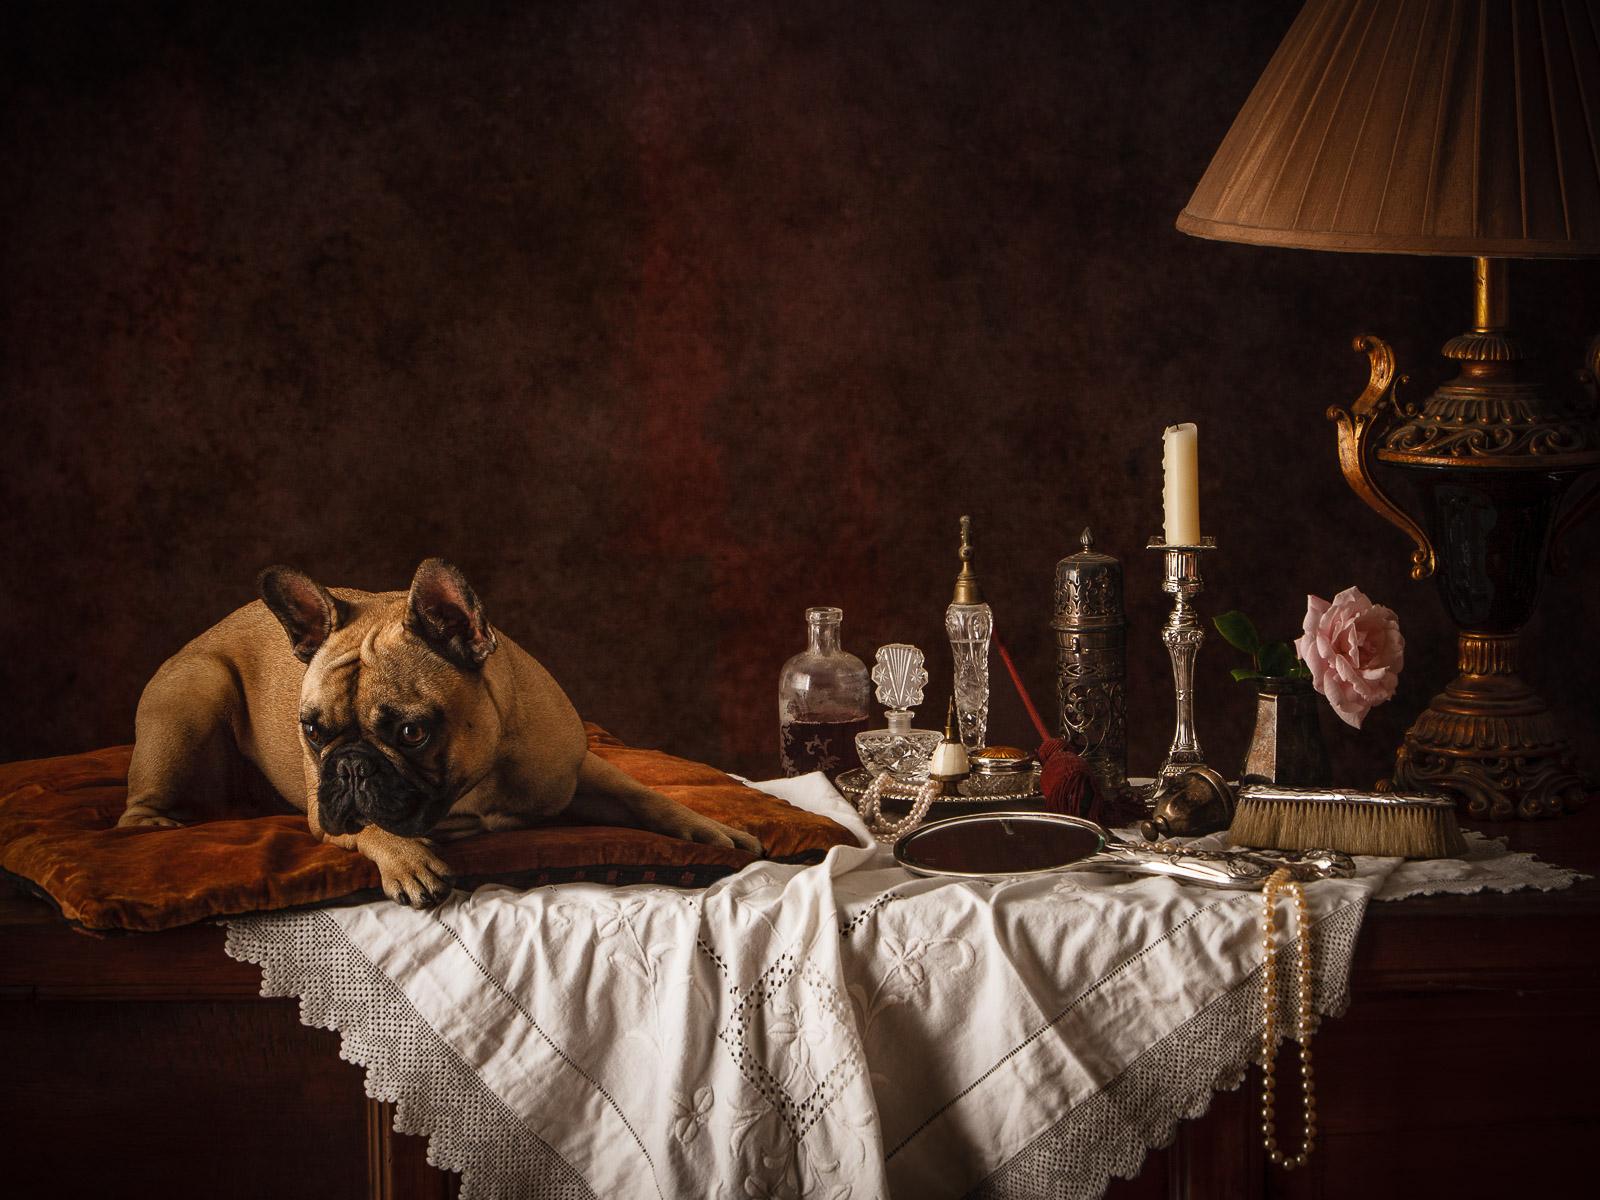 Holländischer Hund #4 Französische Bulldogge-  Signierter Archivpigmentdruck in limitierter Auflage  -  Auflage von 3

Eine Serie von vier Bildern, die vom goldenen Zeitalter der niederländischen Stilllebenmalerei des 17. Jahrhunderts inspiriert